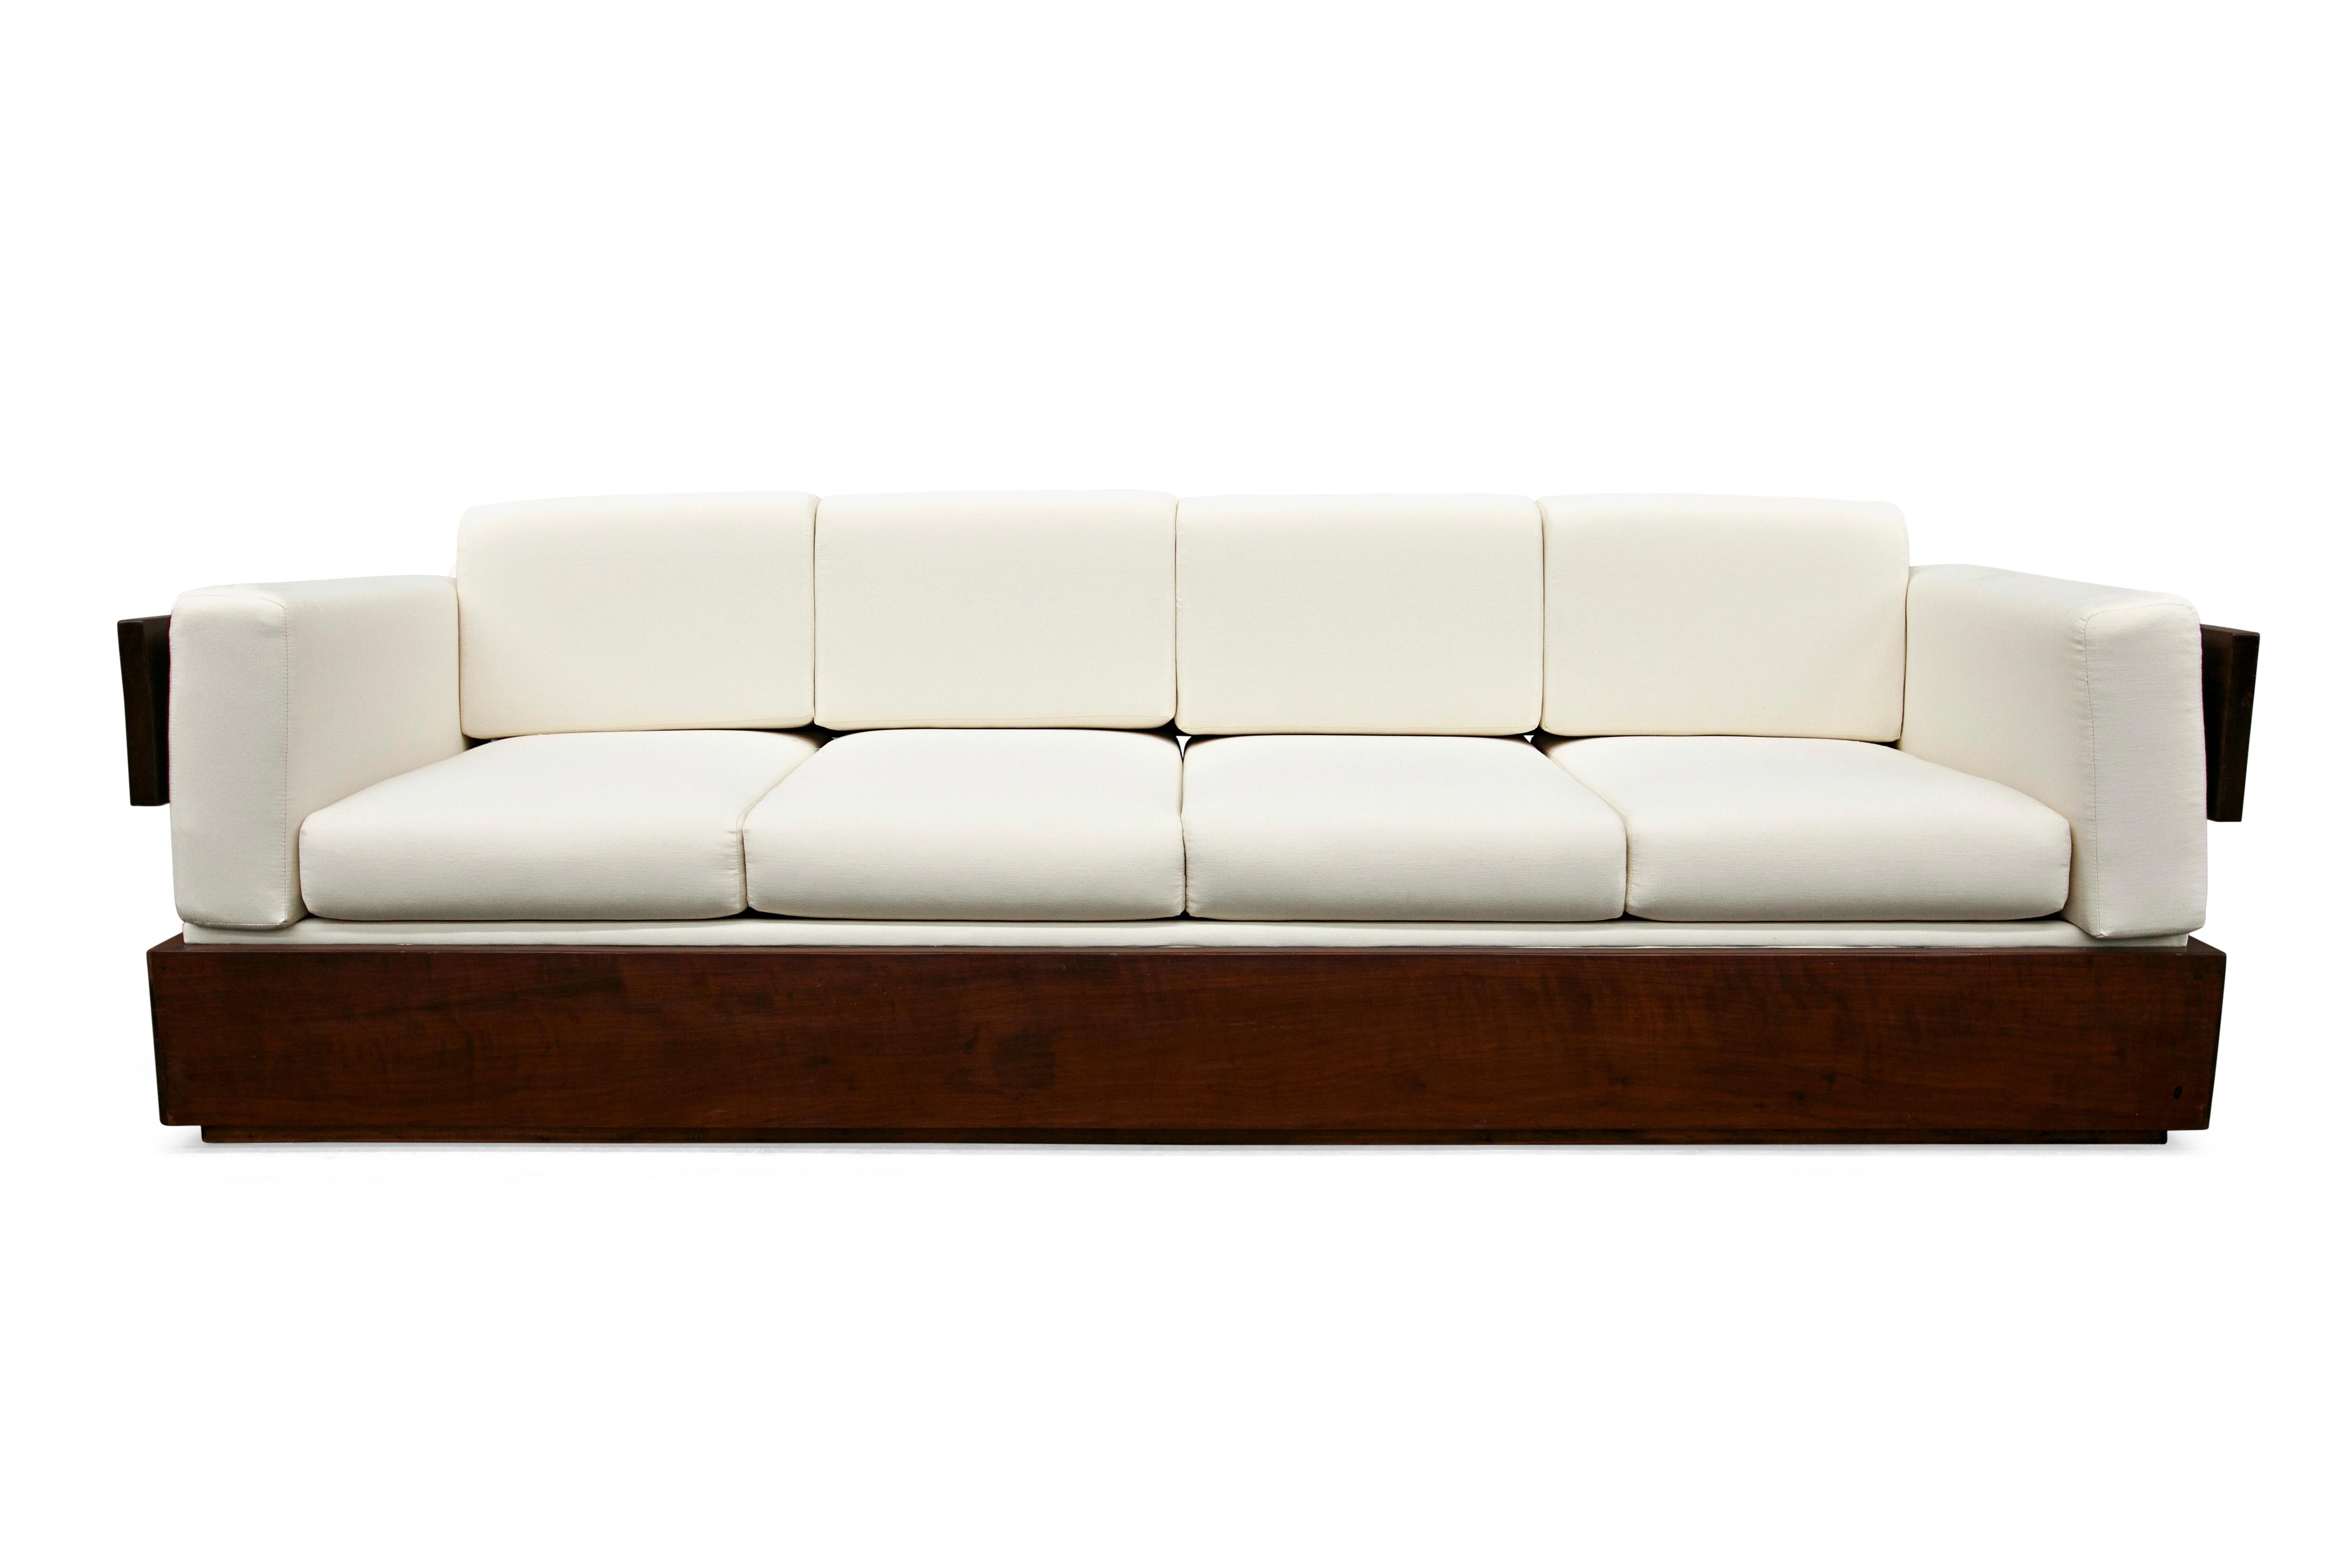 Ce canapé moderne brésilien en bois dur et lin blanc réalisé par Celina dans les années 60 n'est rien de moins que spectaculaire !

Le cadre du canapé est en bois de rose brésilien.  et les coussins ont été recouverts de lin blanc. La forme du